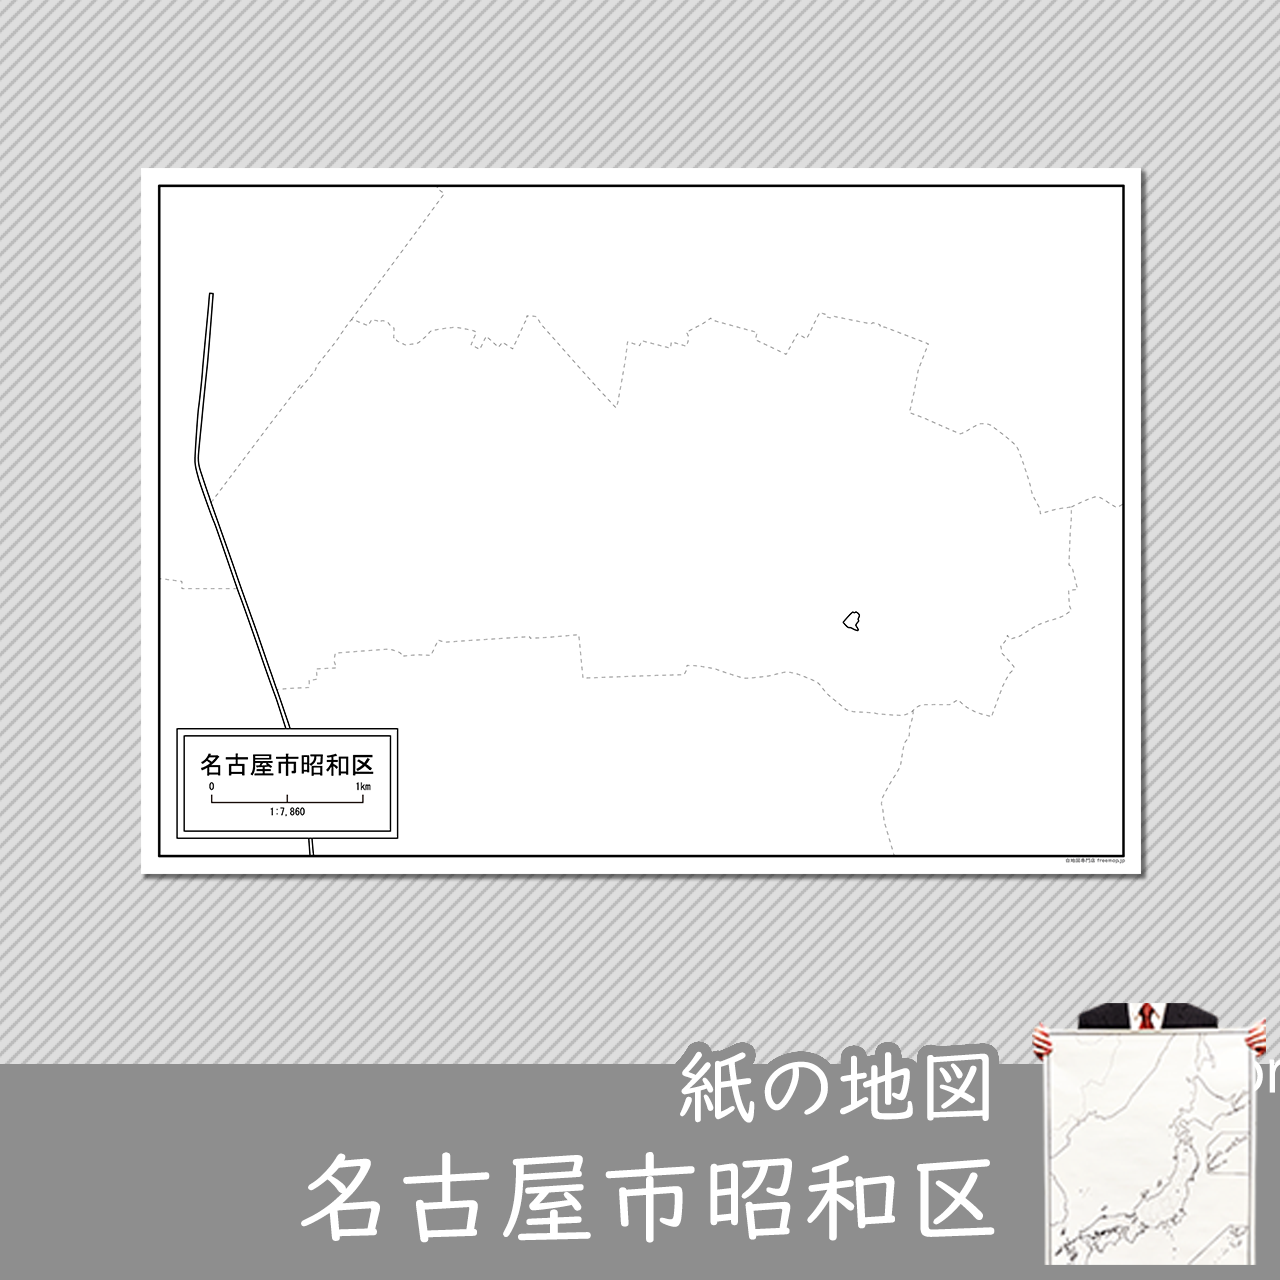 名古屋市昭和区の紙の白地図のサムネイル